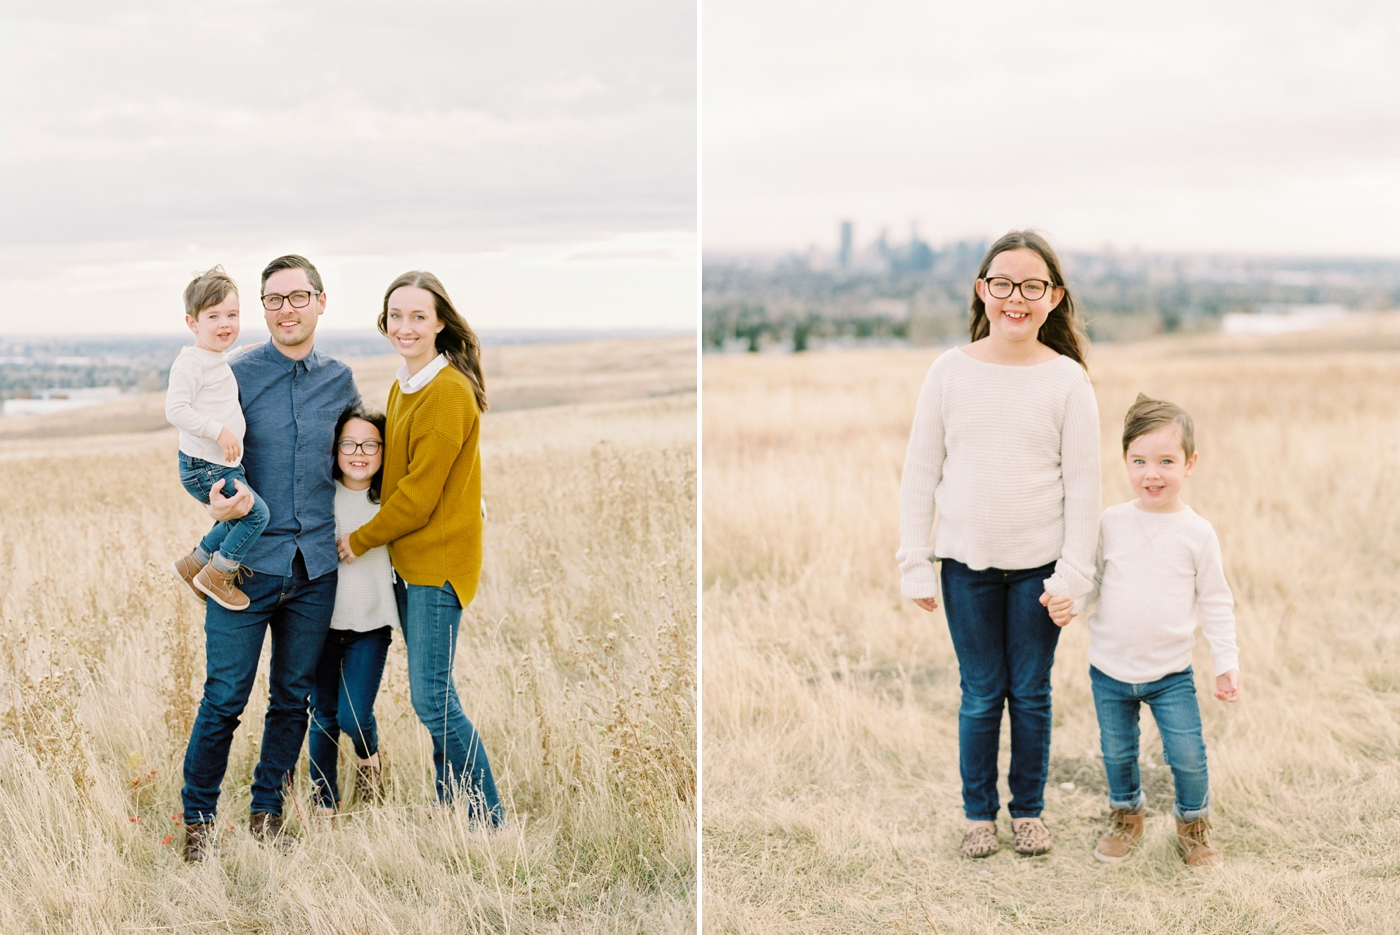 Fall family photographers | Calgary fine art family photographer | Justine Milton Photography